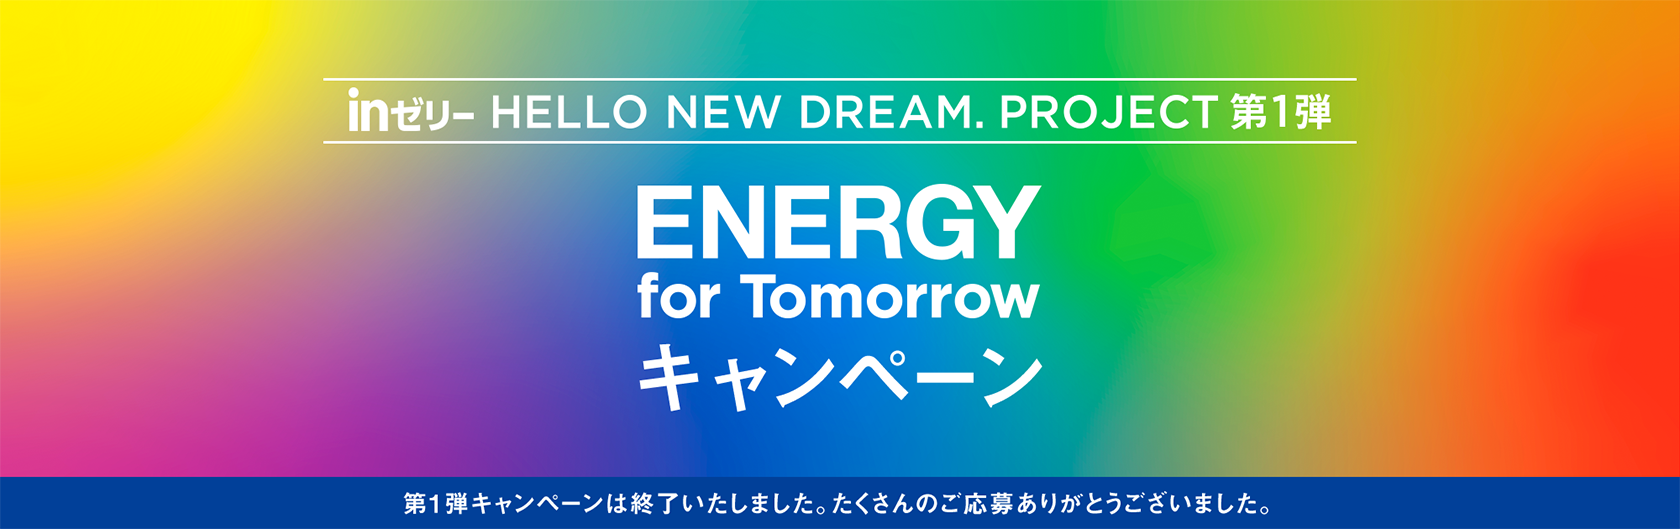 inゼリー HELLO NEW DREAM.PROJECT 第1弾 ENERGY for Tomorrow キャンペーン 第1弾キャンペーンは終了いたしました。たくさんのご応募ありがとうございました。